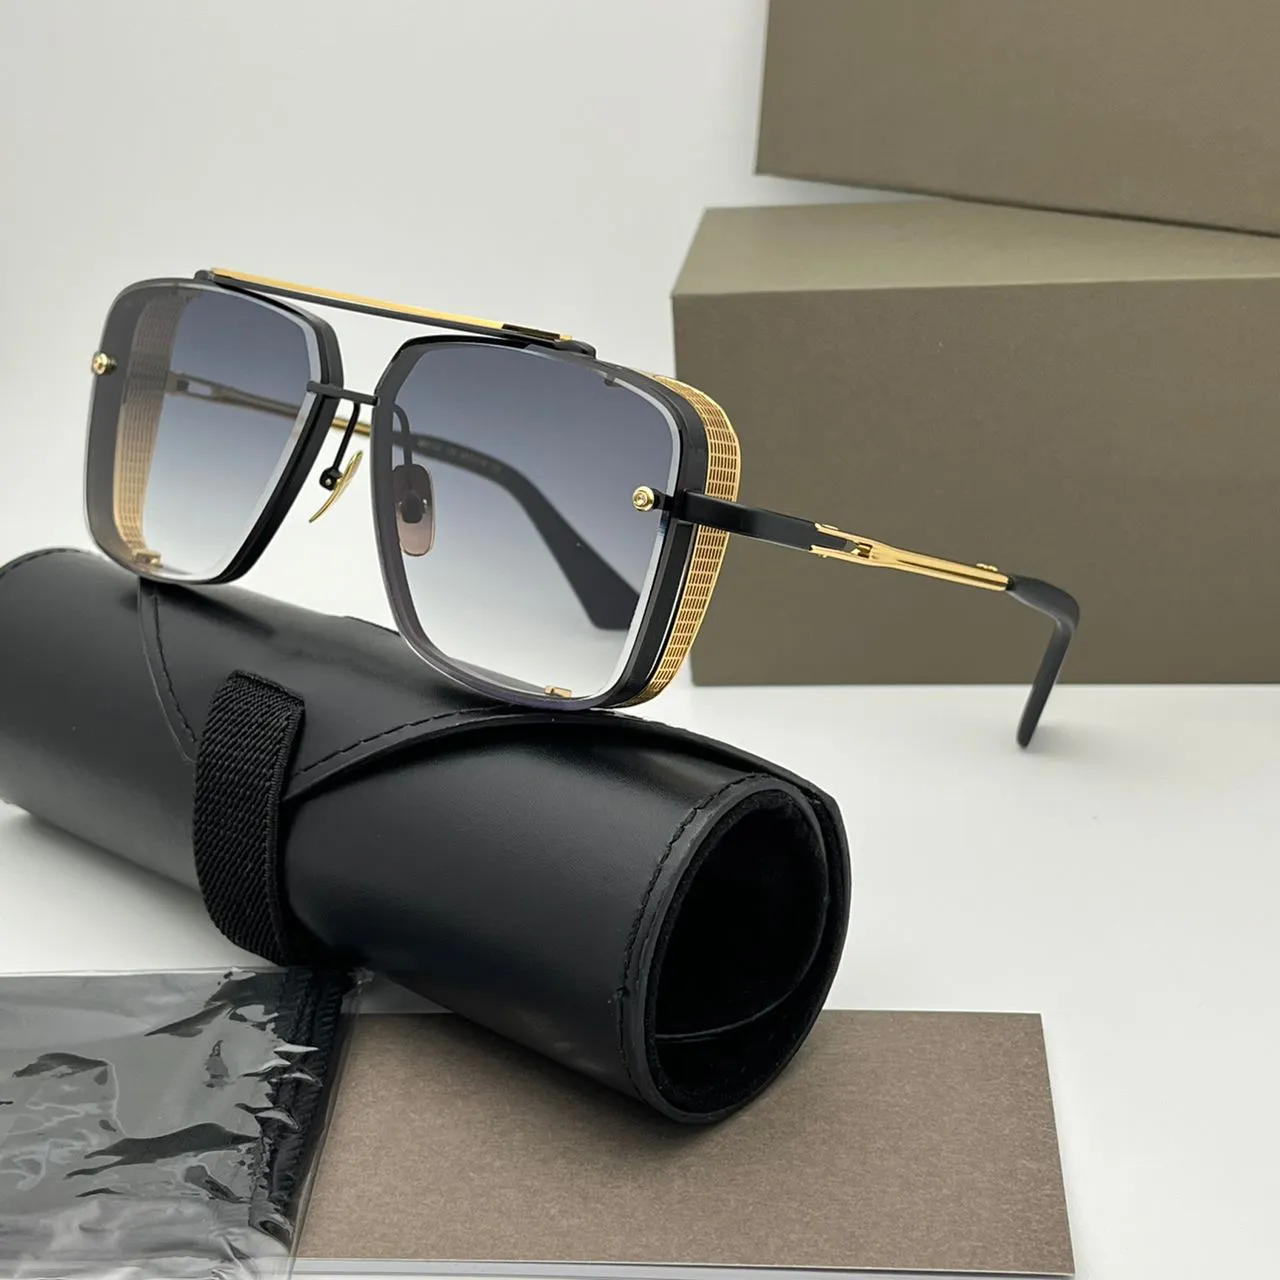 Солнцезащитные очки L EDITION M SIX, солнцезащитные очки для мужчин и женщин, летние классические стильные солнцезащитные очки с защитой от ультрафиолета в стиле ретро, квадратные модные очки в полной оправе, случайная коробка